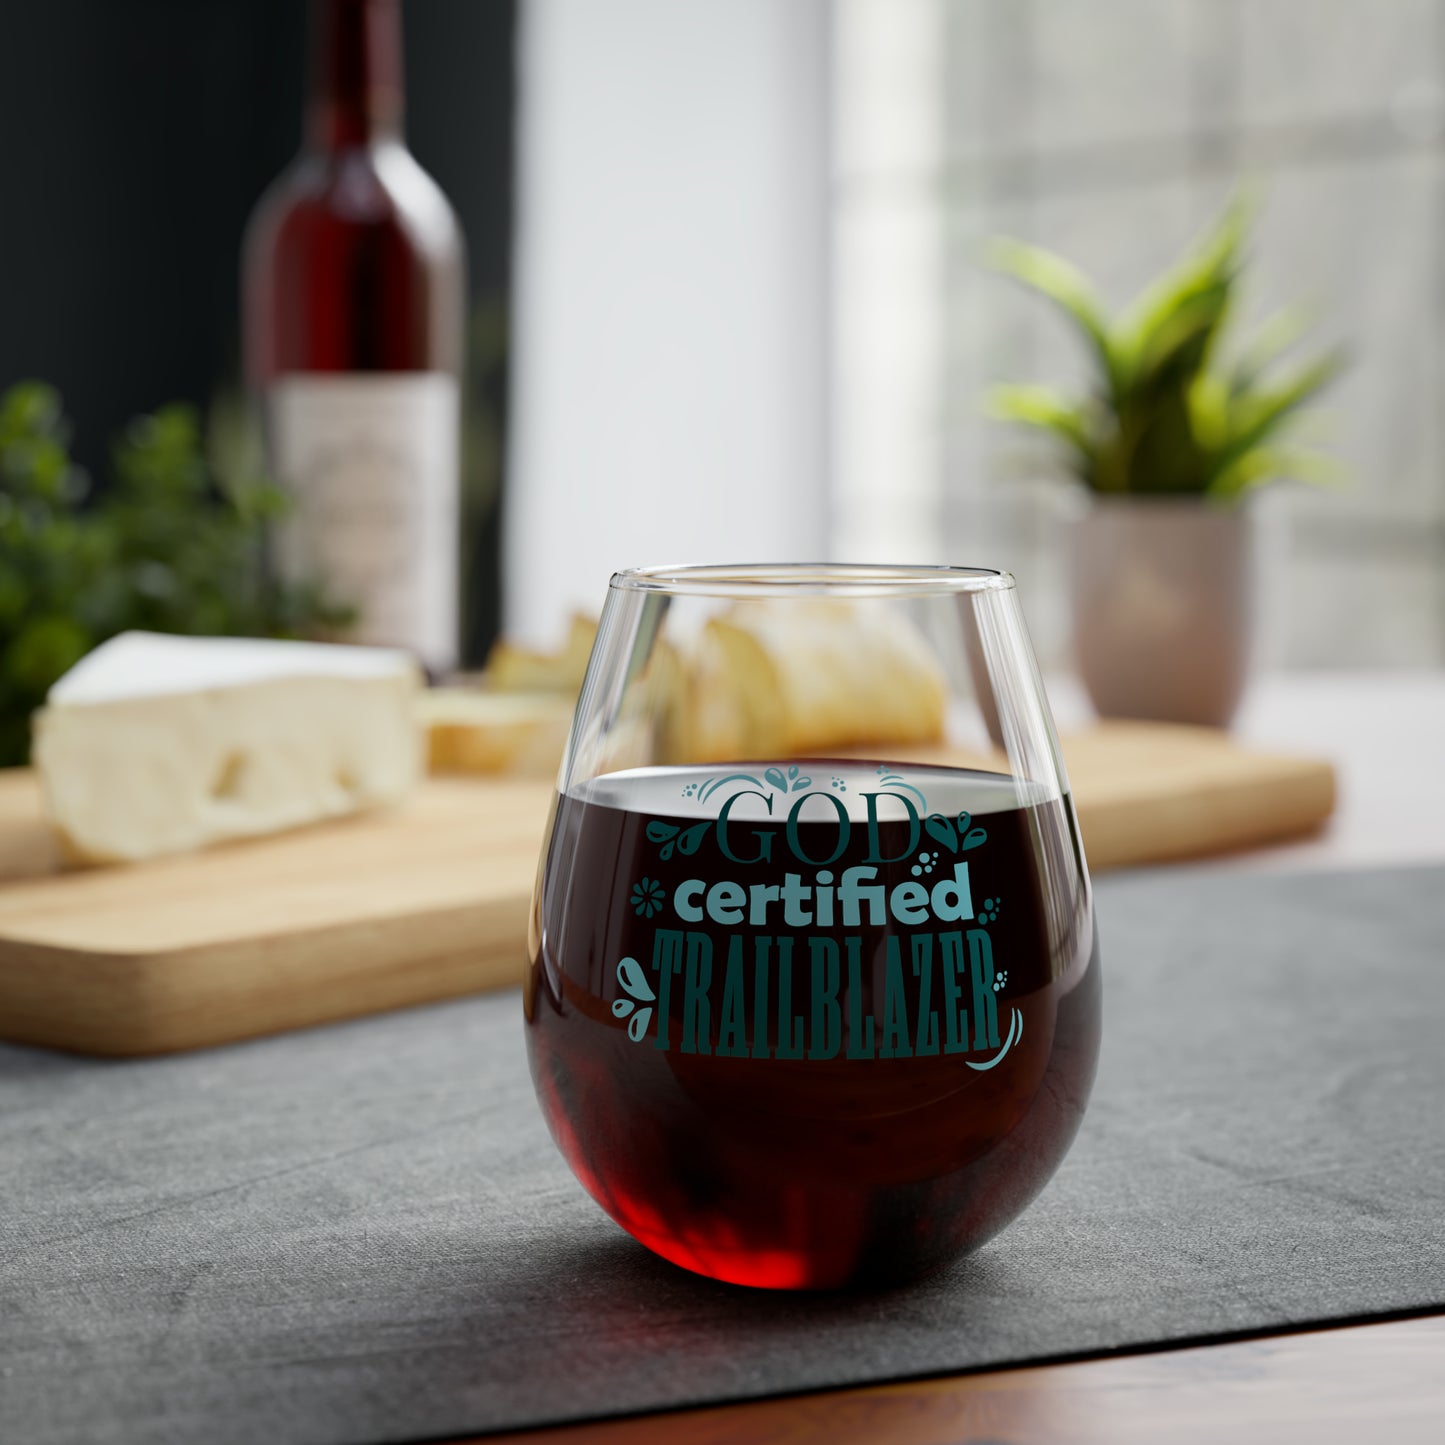 God Certified Trailblazer Stemless Wine Glass, 11.75oz